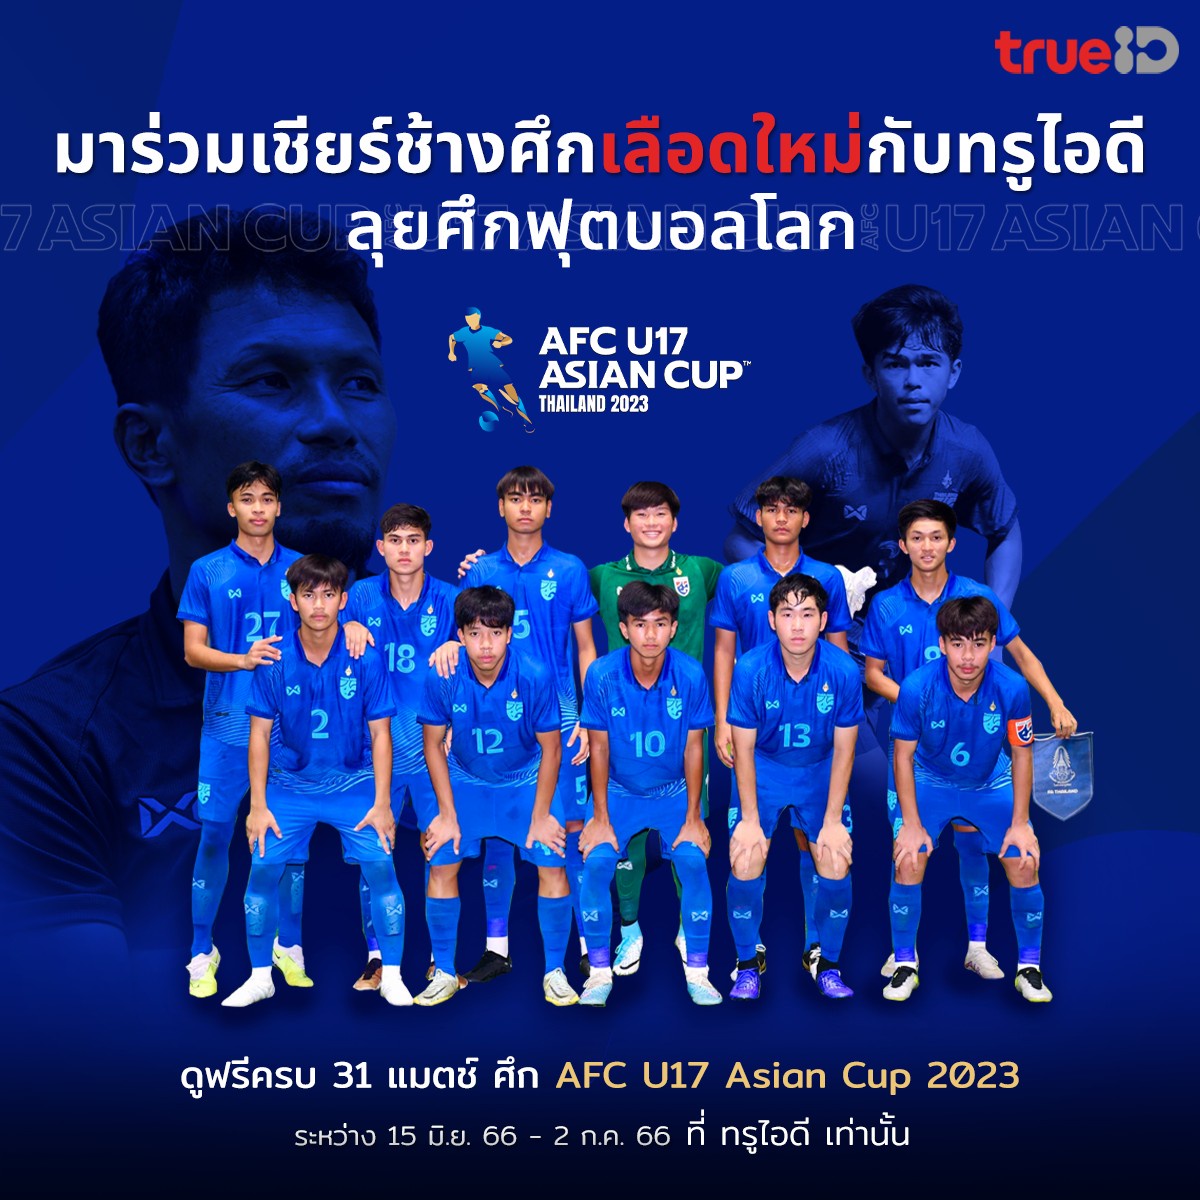 ทรูไอดี คว้าลิขสิทธิ์ออนไลน์ถ่ายทอดสด AFC U17 ASIAN CUP THAILAND 2023 ครบทุกแมตซ์ ชวนแฟนบอลไทย เชียร์ช้างศึกเลือดใหม่ มันส์สนั่นจอ ดูฟรี